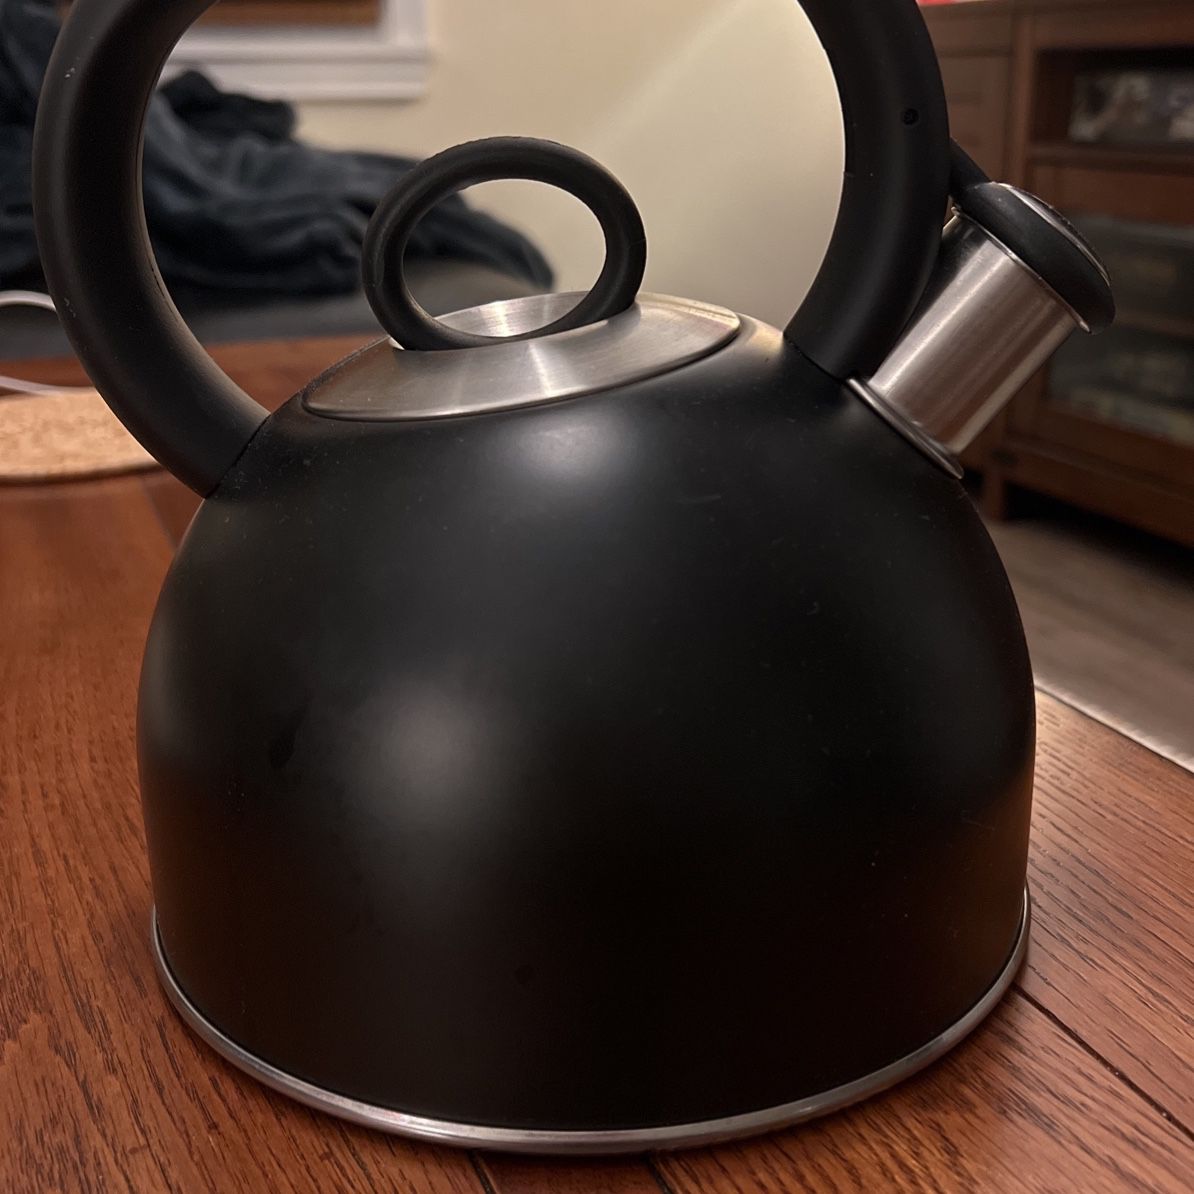 Like-new Cuisinart black kettle 